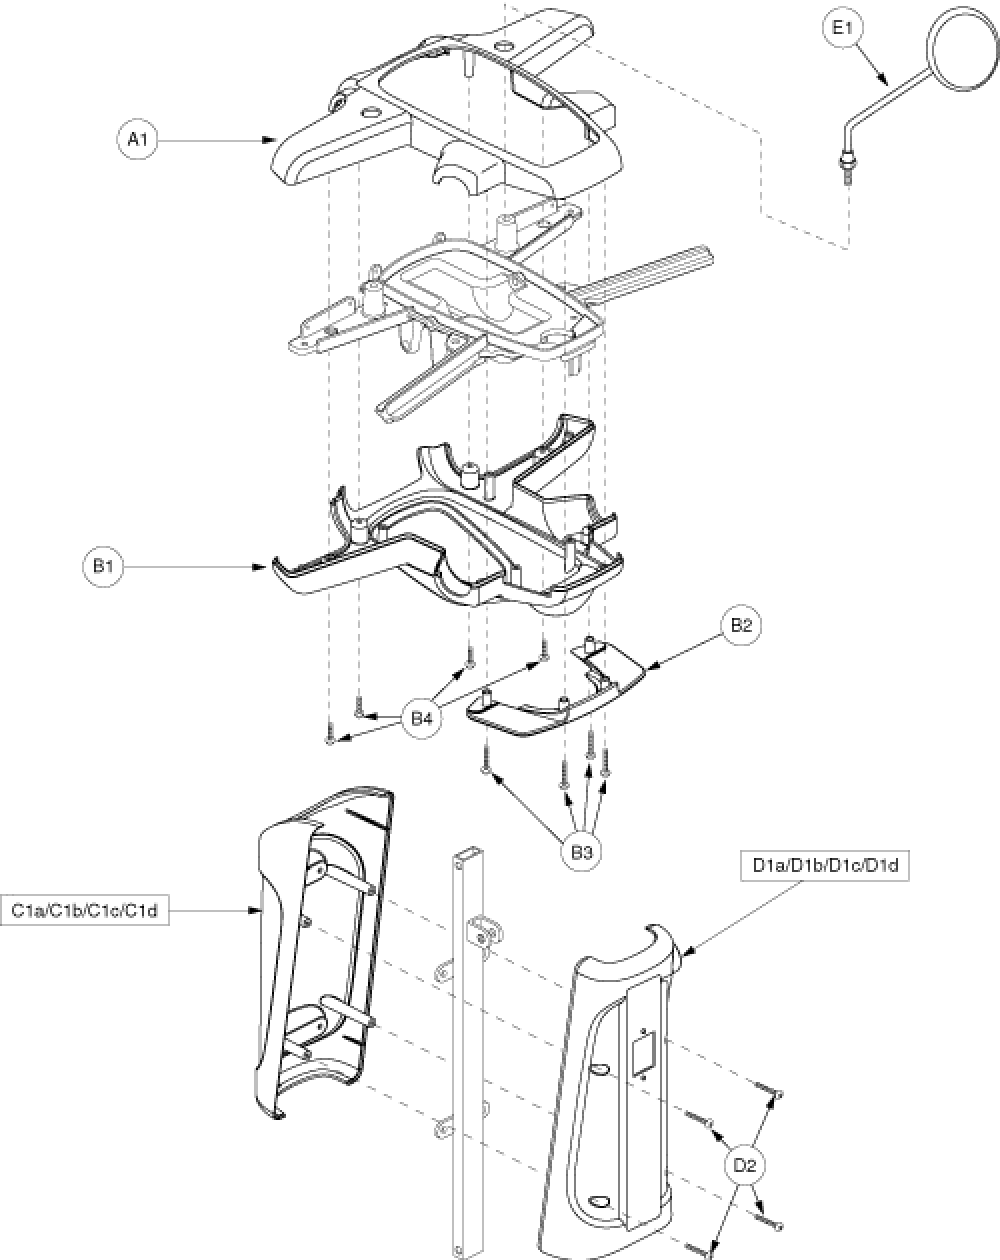 Shroud Assembly - Tiller & Console G2 parts diagram